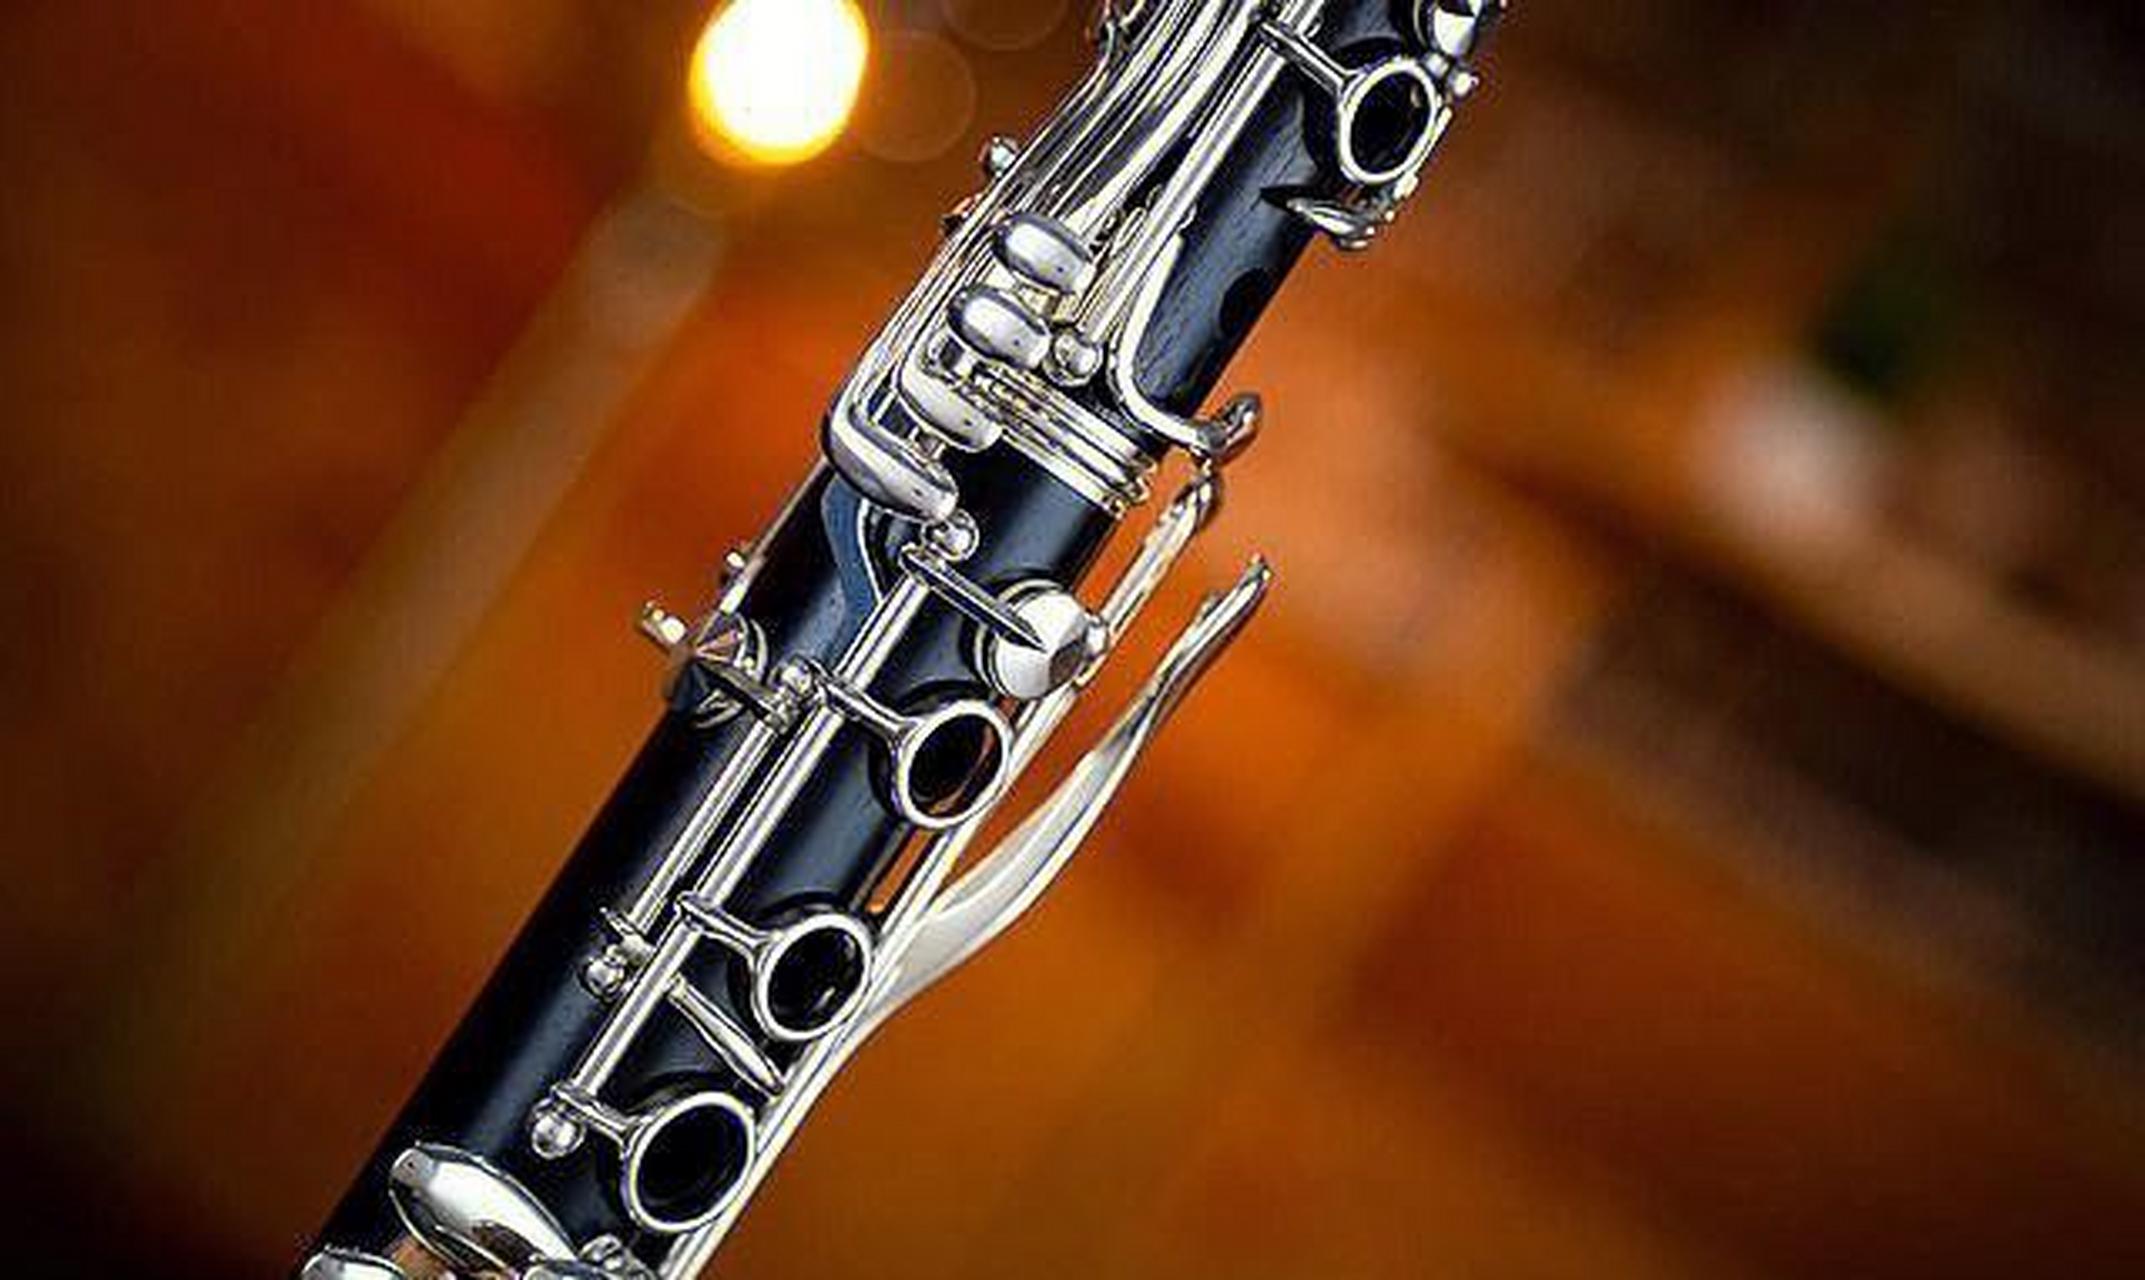 单簧管是一种木管乐器,也被称为克拉管